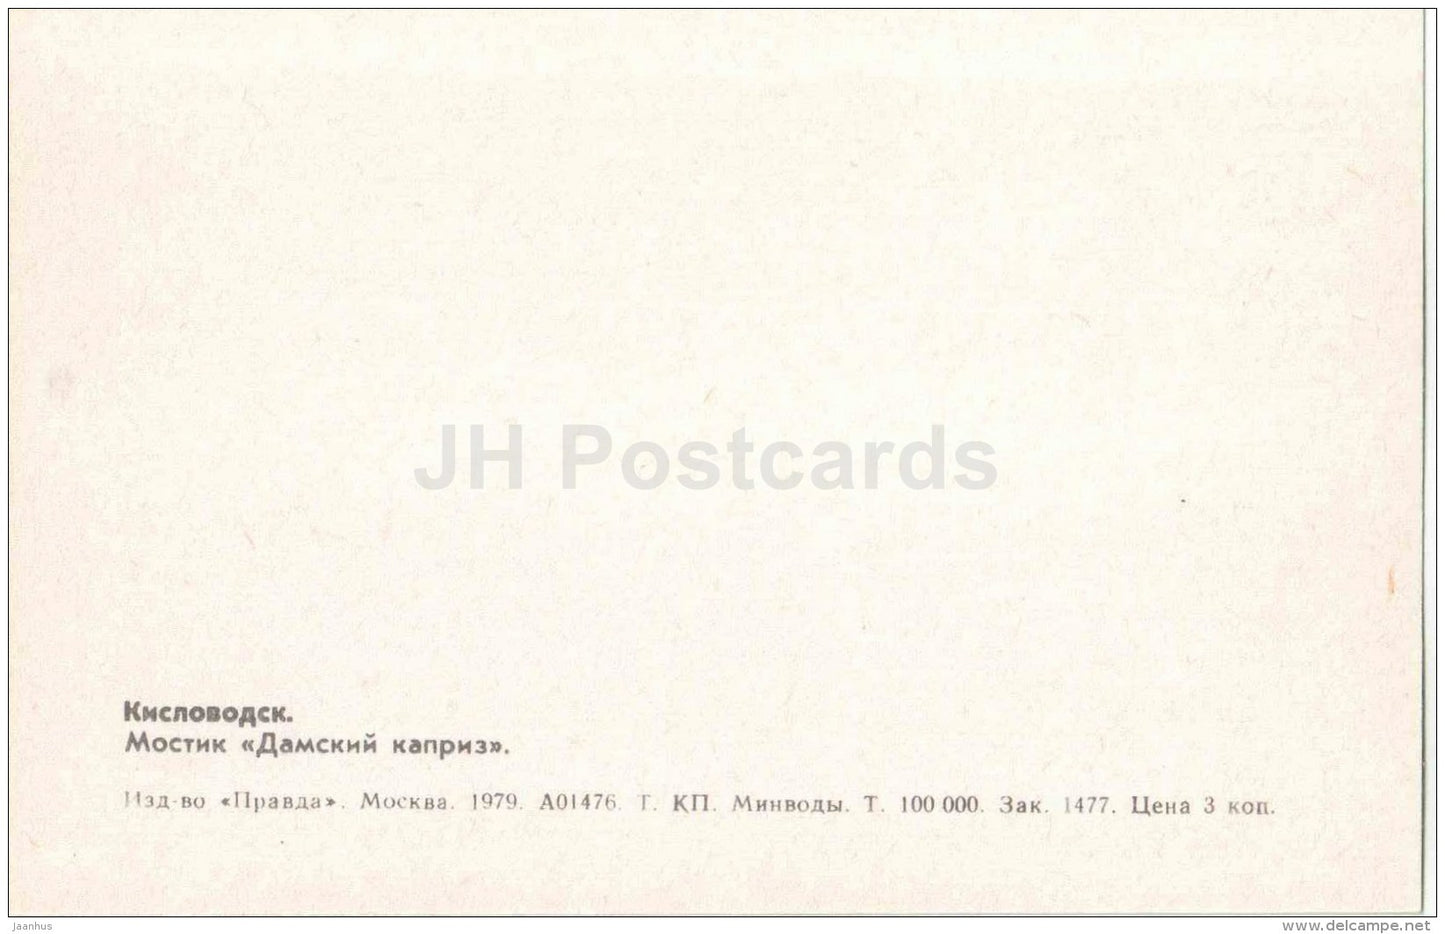 bridge Lady Caprice - Kislovodsk - 1979 - Russia USSR - unused - JH Postcards